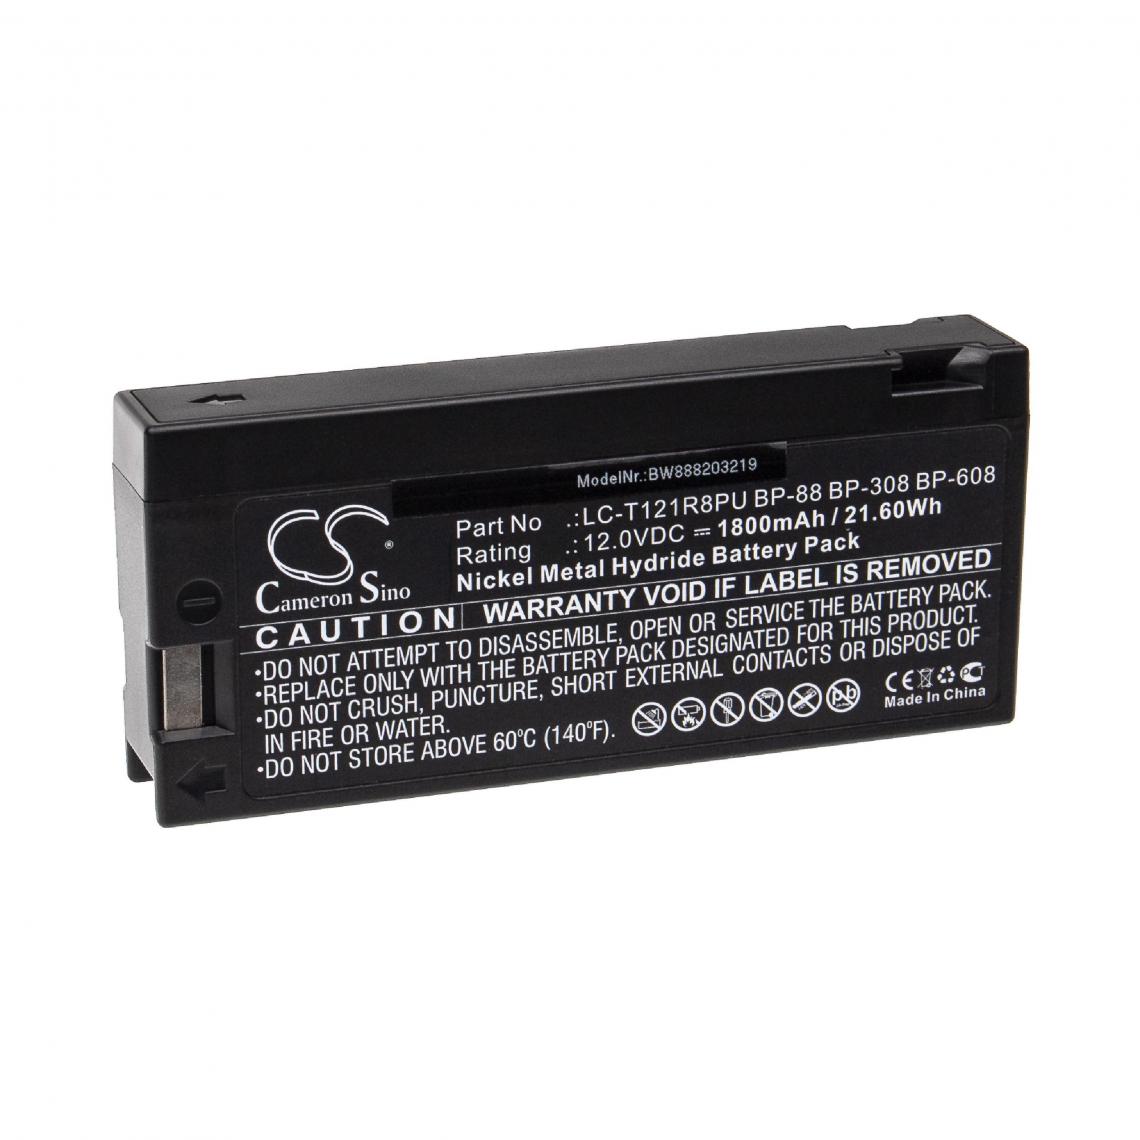 Vhbw - vhbw Batterie compatible avec Keller Medical Specia KMS850, KMS870, KMS890, KMS95 appareil médical (1800mAh, 12V, NiMH) - Piles spécifiques